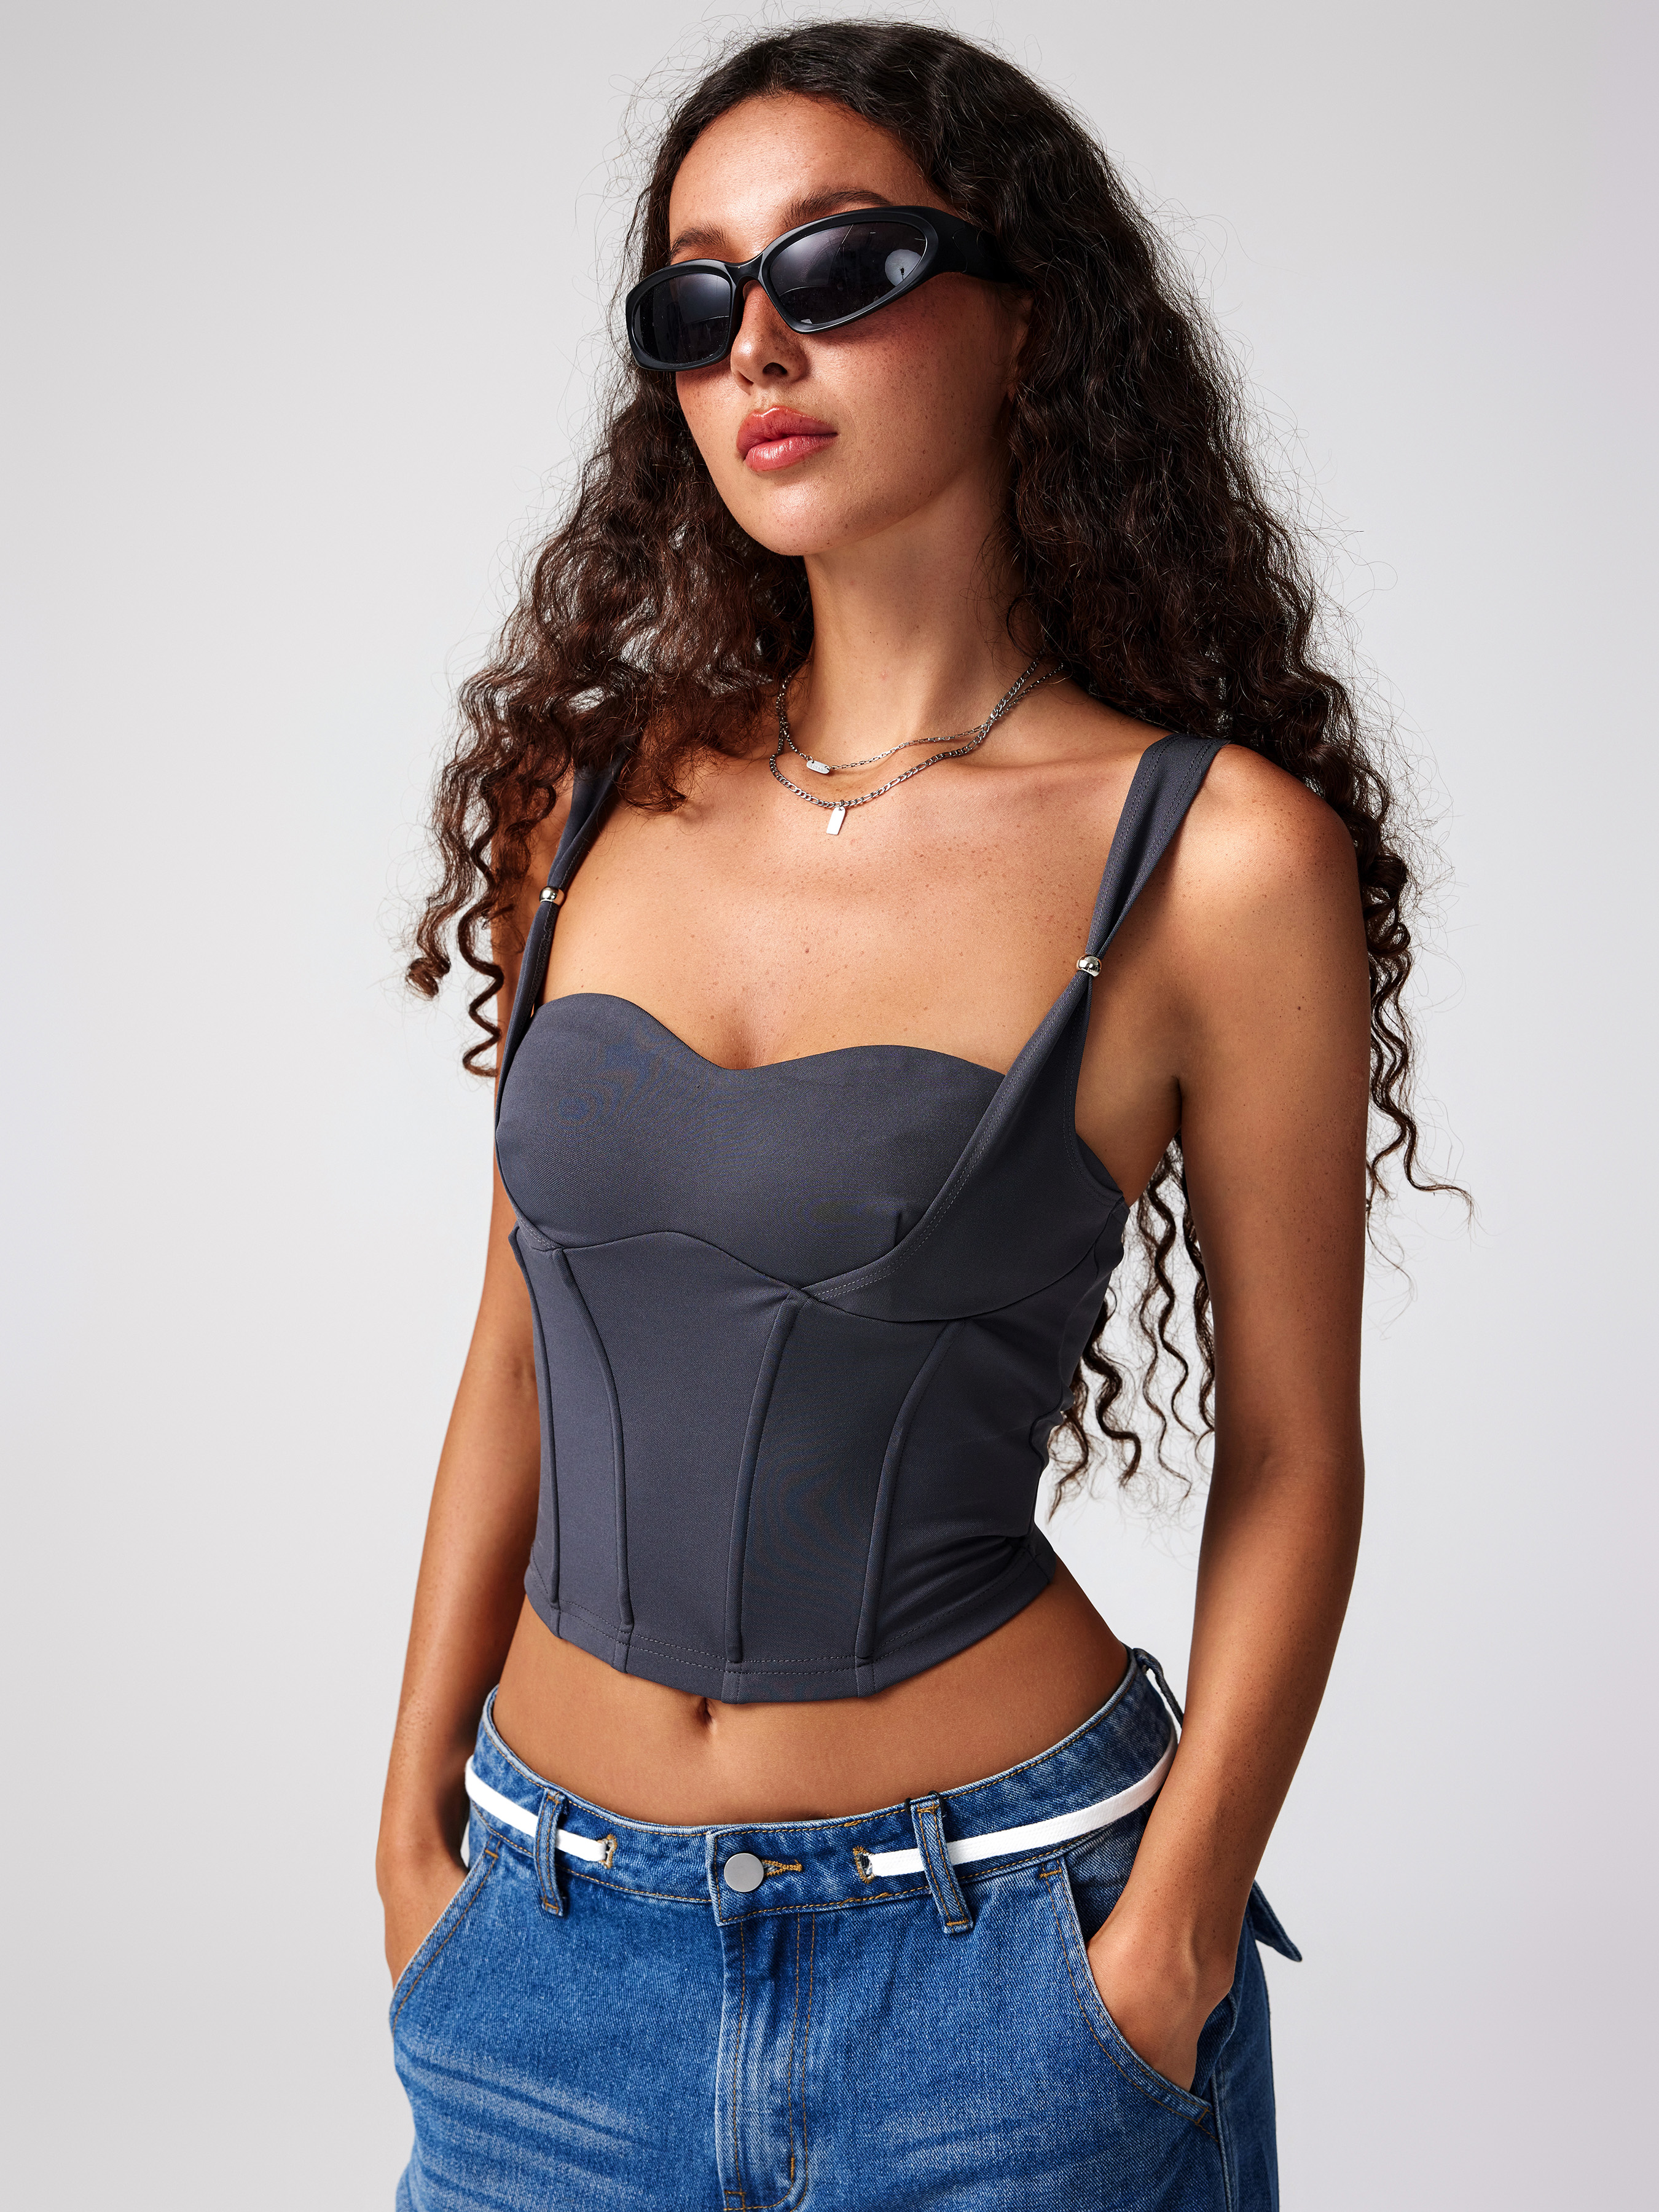 Top corset floral✨ Entrega Inmediata 1. Naranja S M L 2. Cafe S M L Lps.  750.00 Envíos a todo el País